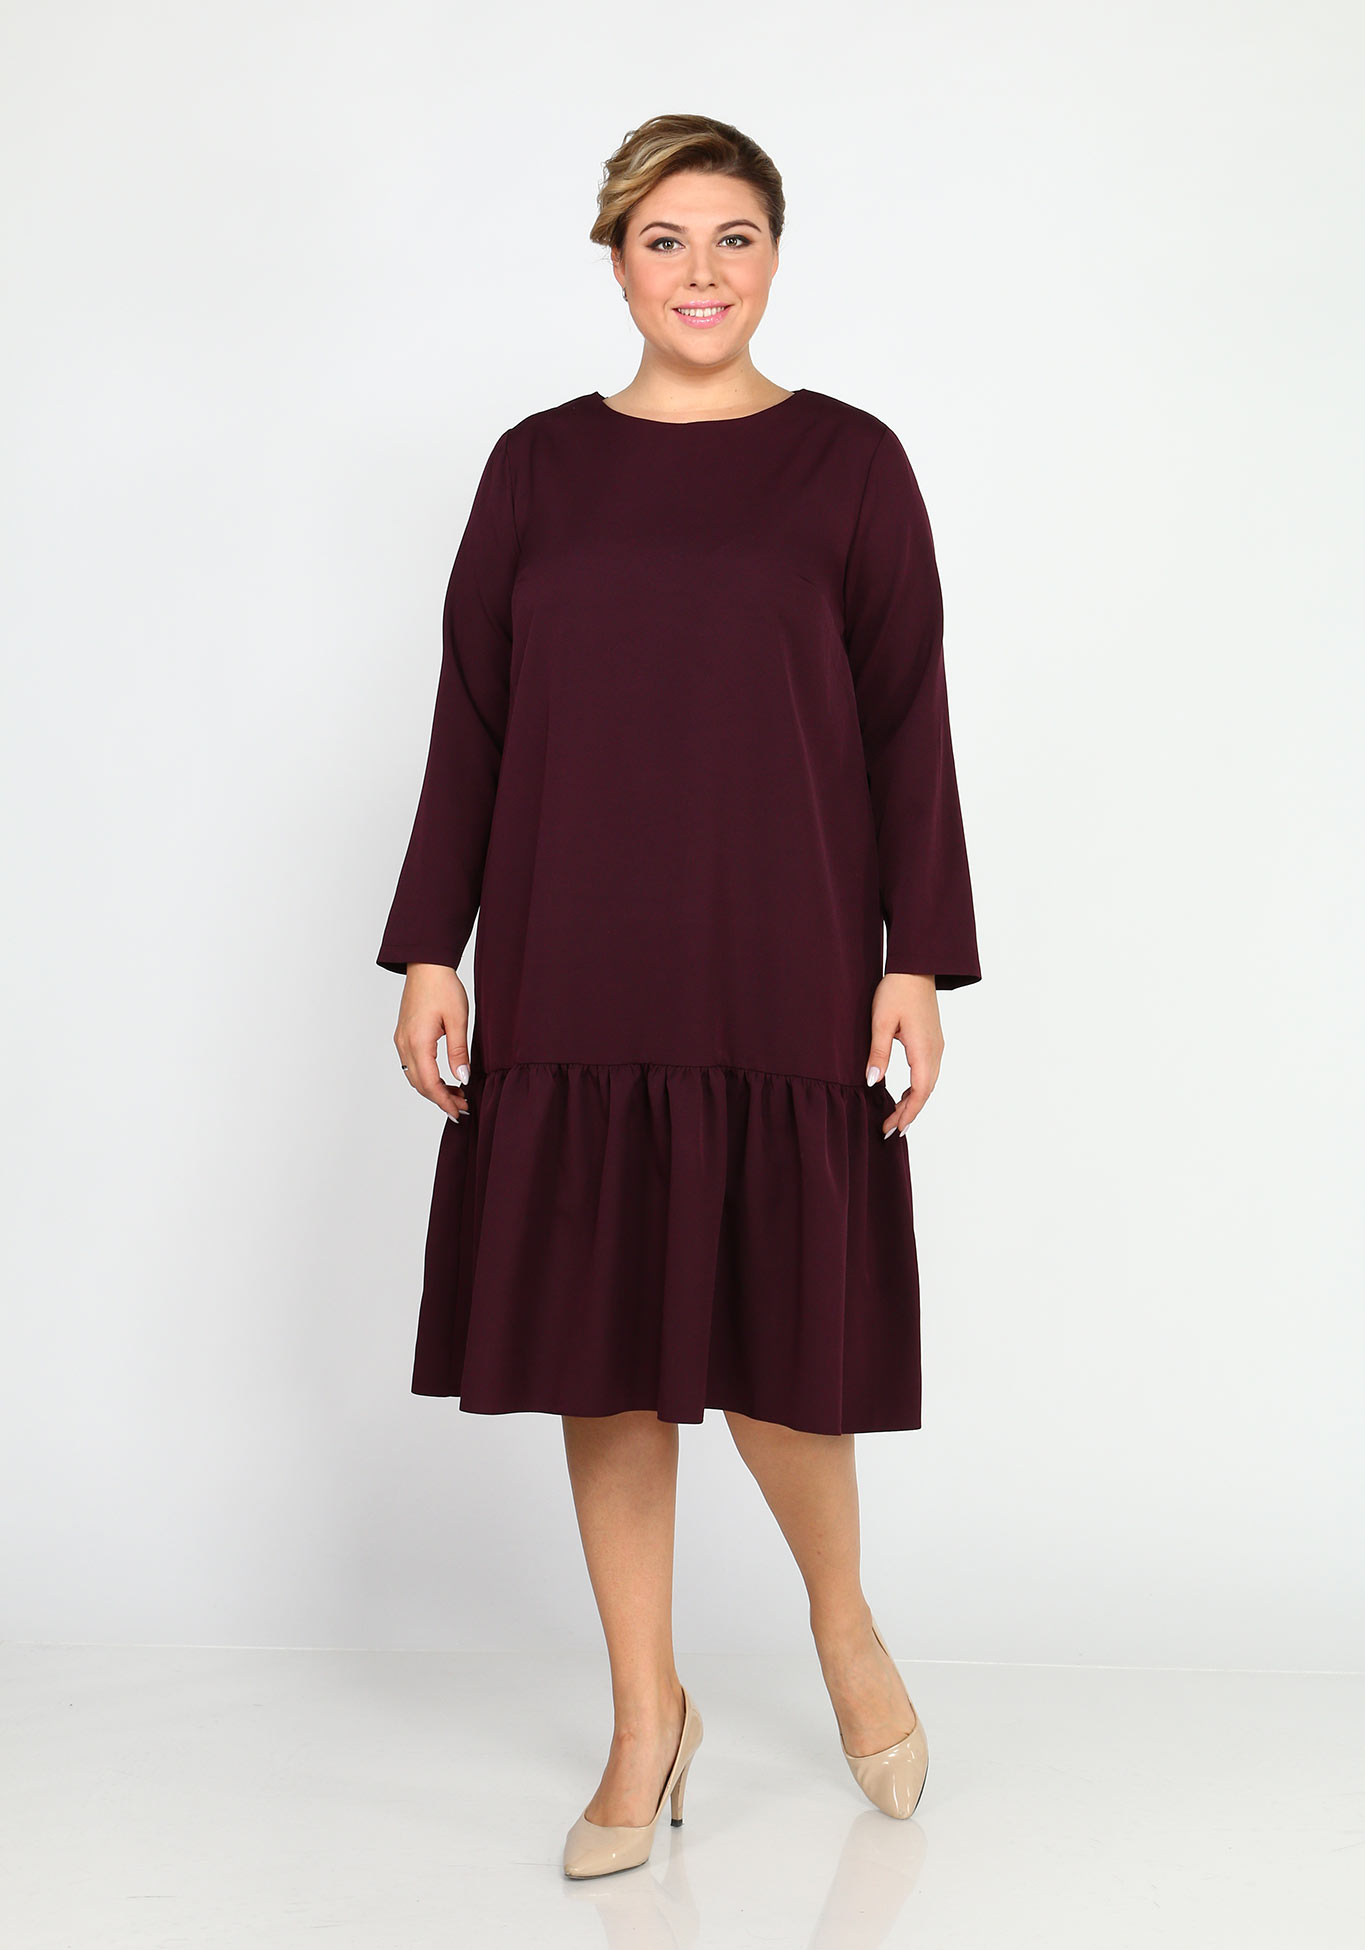 Платье базовое с воланом Elletto Life, размер 44, цвет марсала - фото 2